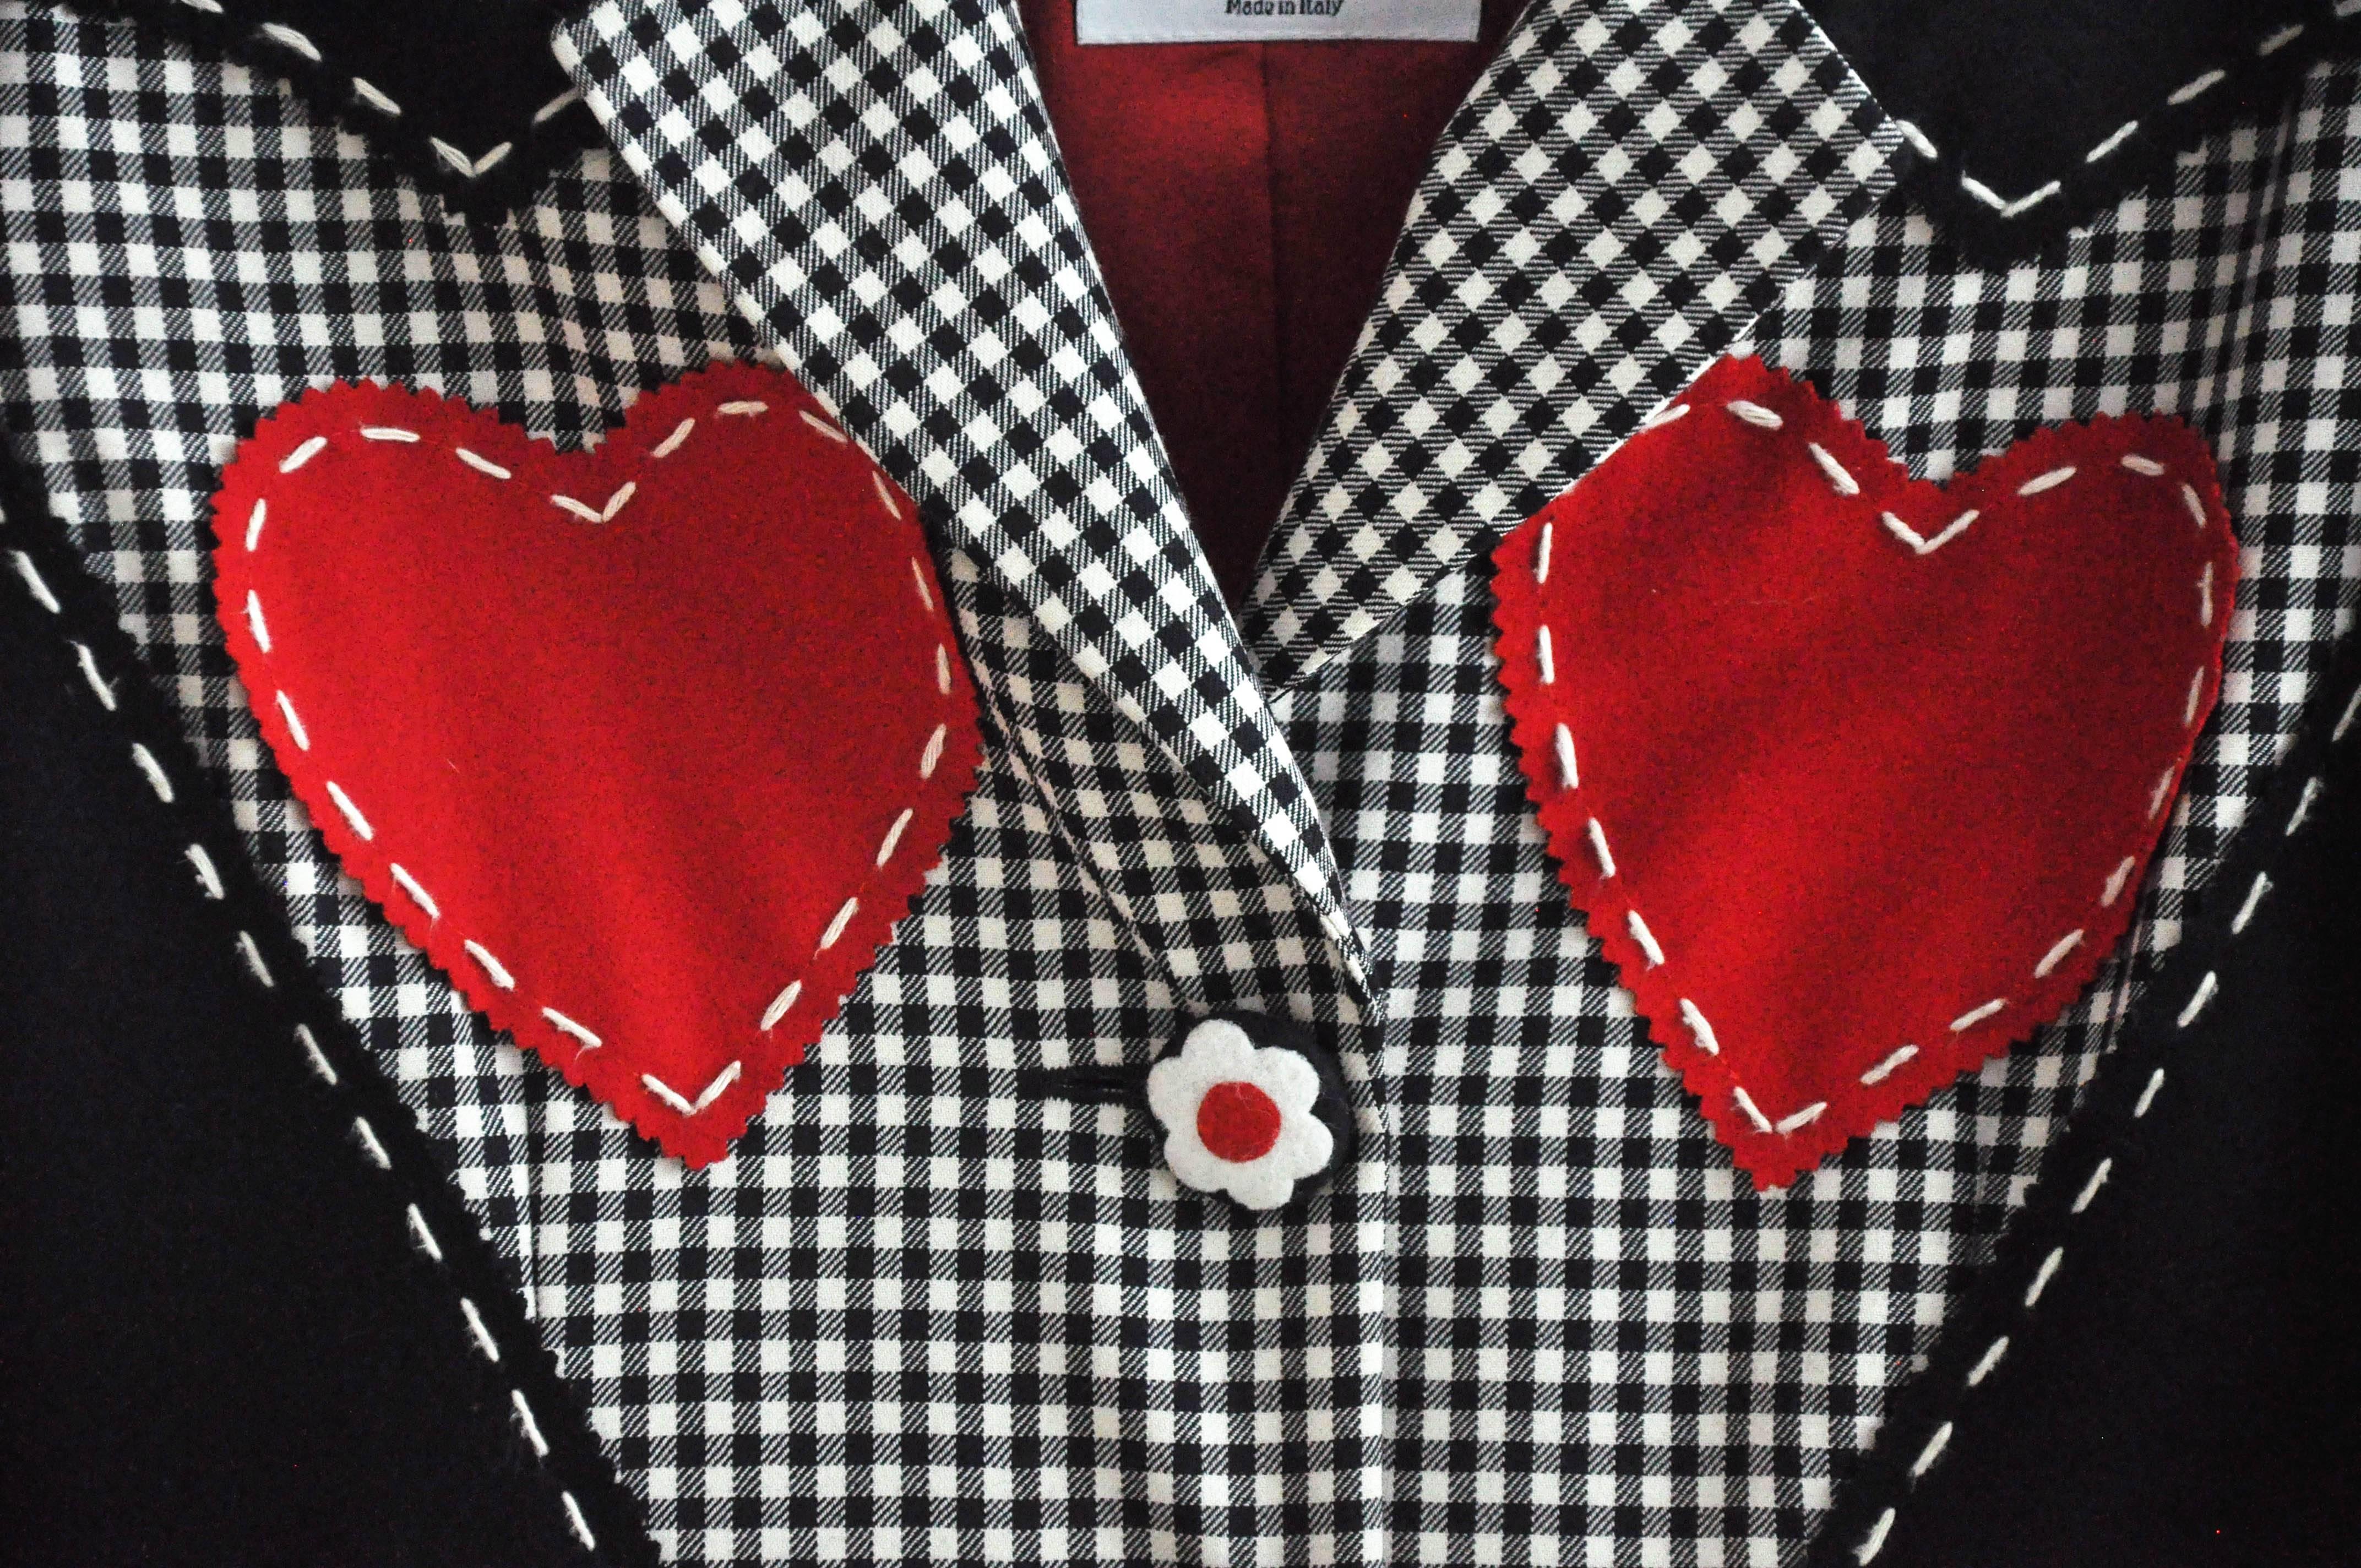 Ein farbenfroher, schwarz-weiß karierter Blazer mit zwei roten Herzen von dem innovativen italienischen Designer Franco Moschino (1950-1994).  Er ist bekannt für seine kühnen, modernen Entwürfe, die oft die High Fashion persiflieren.  Das